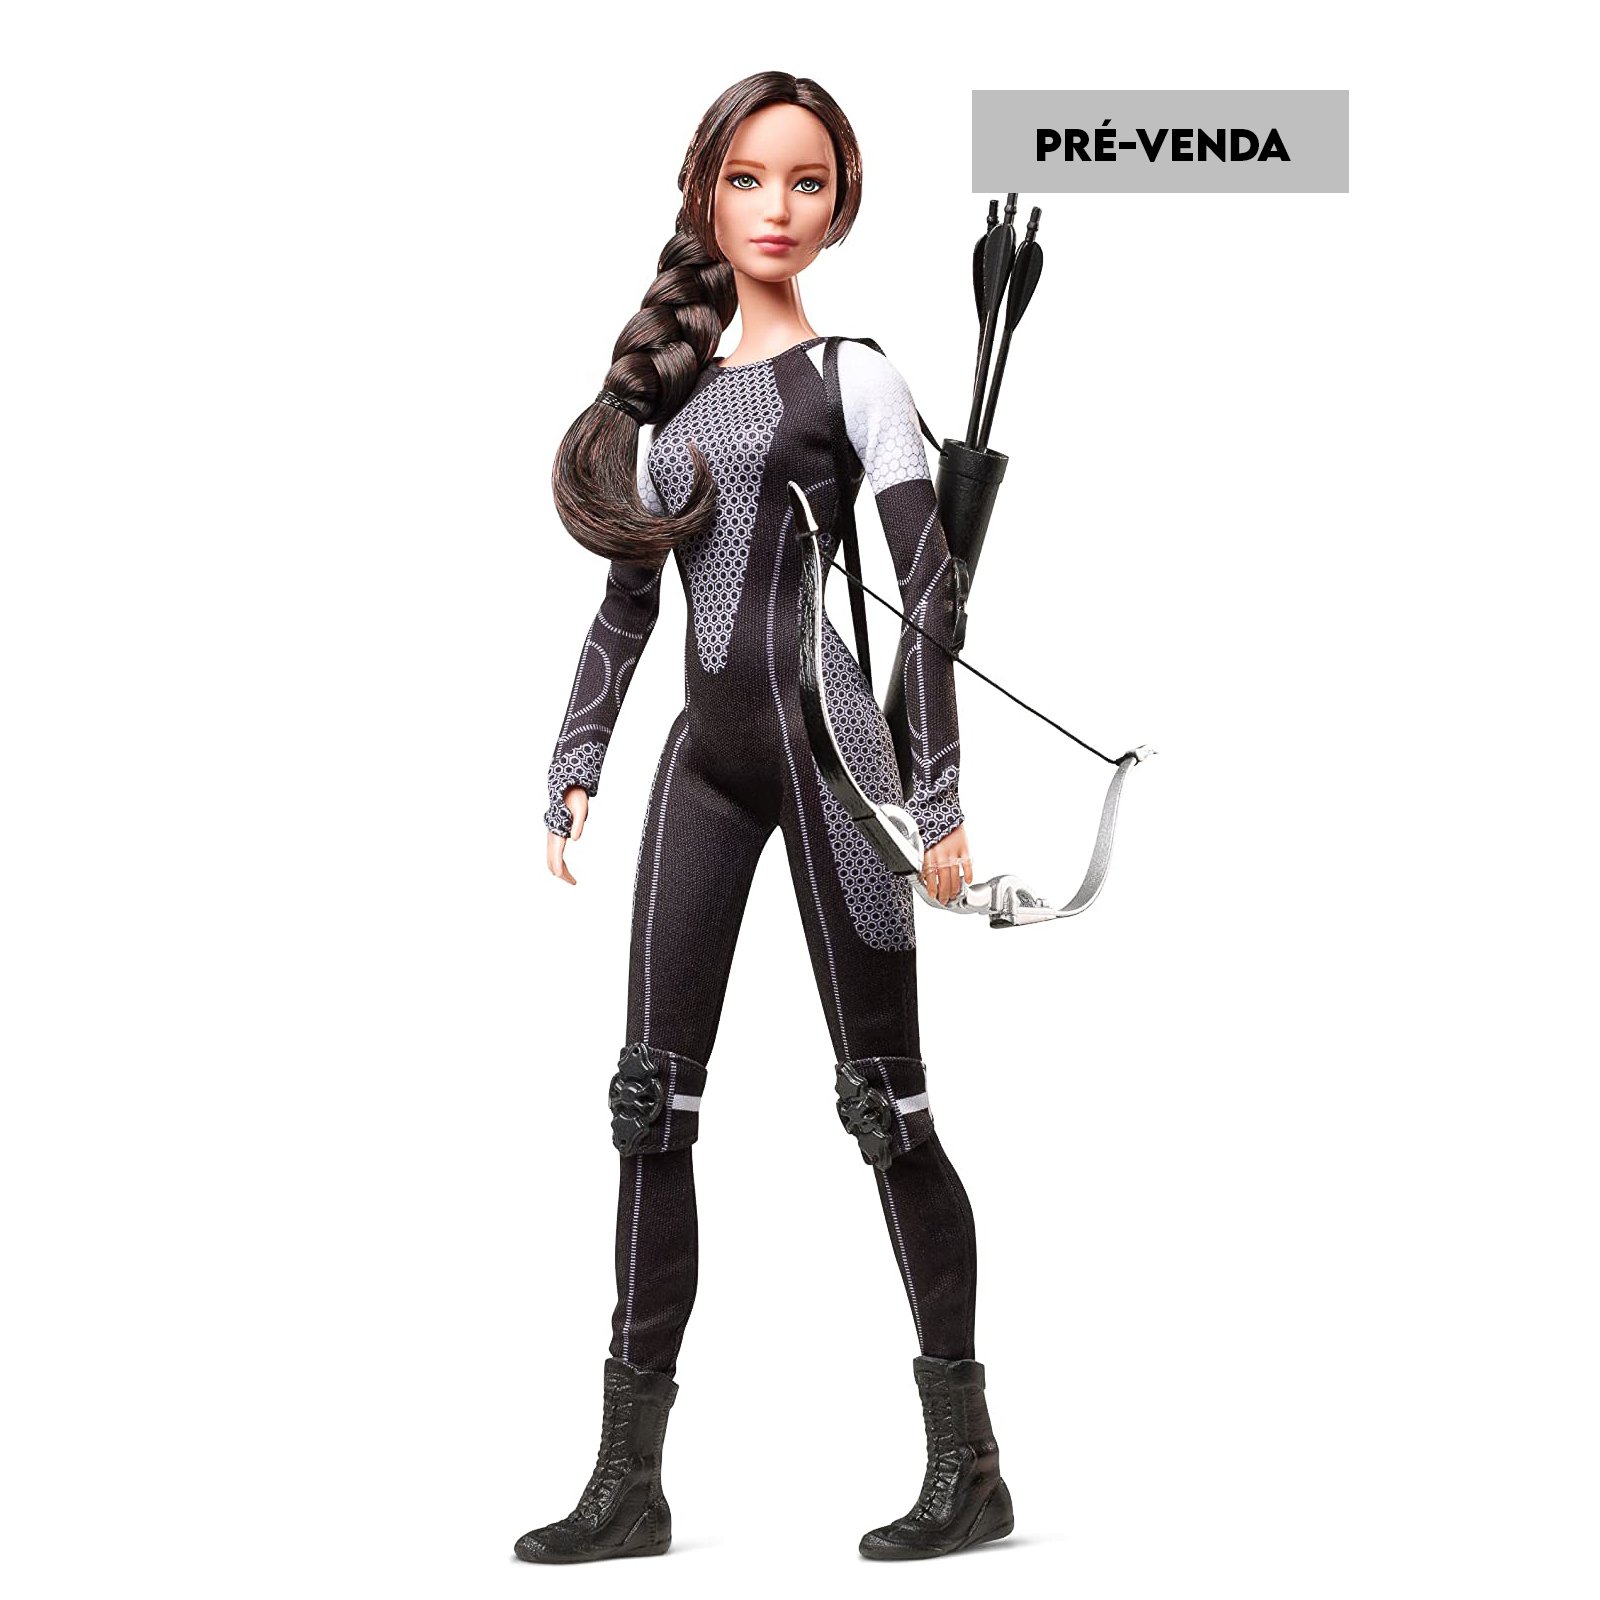 Preços baixos em Bonecas Barbie Hunger Games e Boneca Playsets sem Vintage